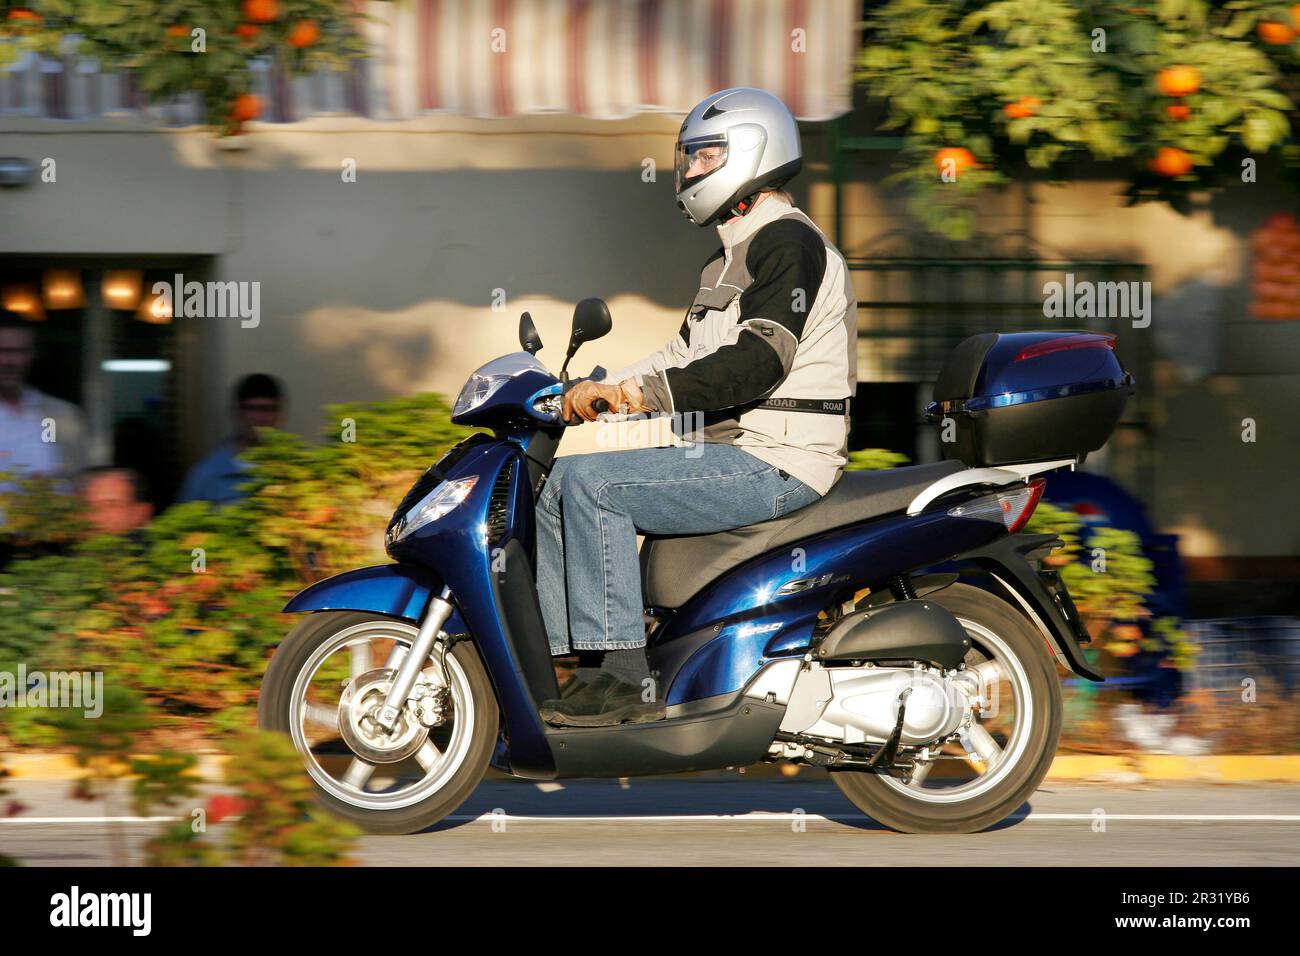 Honda 125 immagini e fotografie stock ad alta risoluzione - Alamy